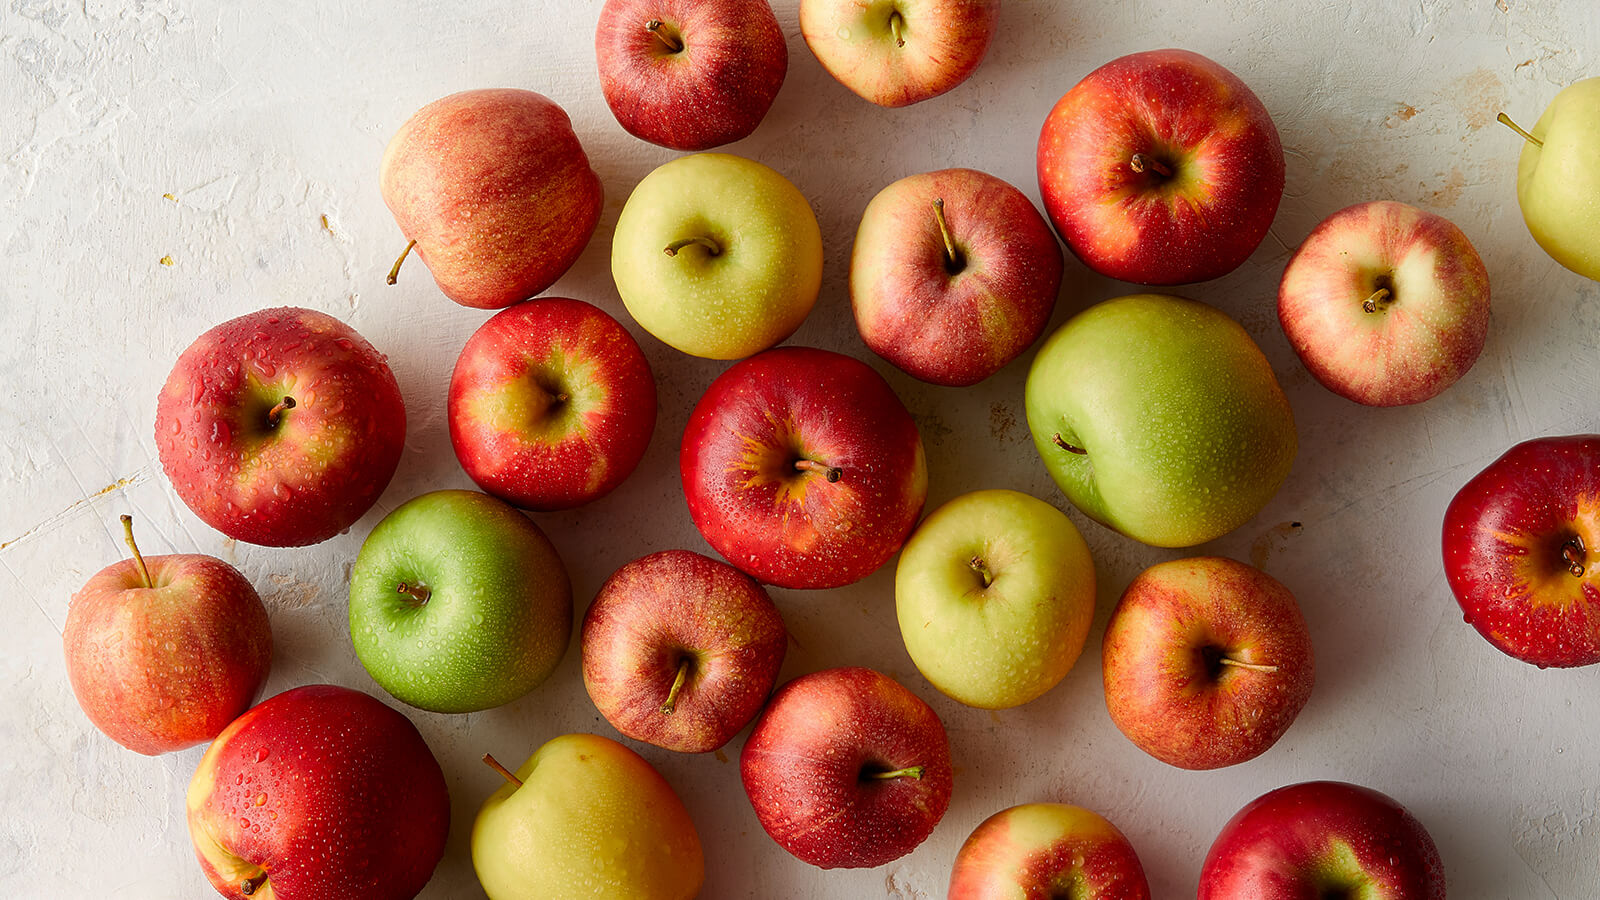 Seasonal Apple Guide, Learn About Apple Varieties